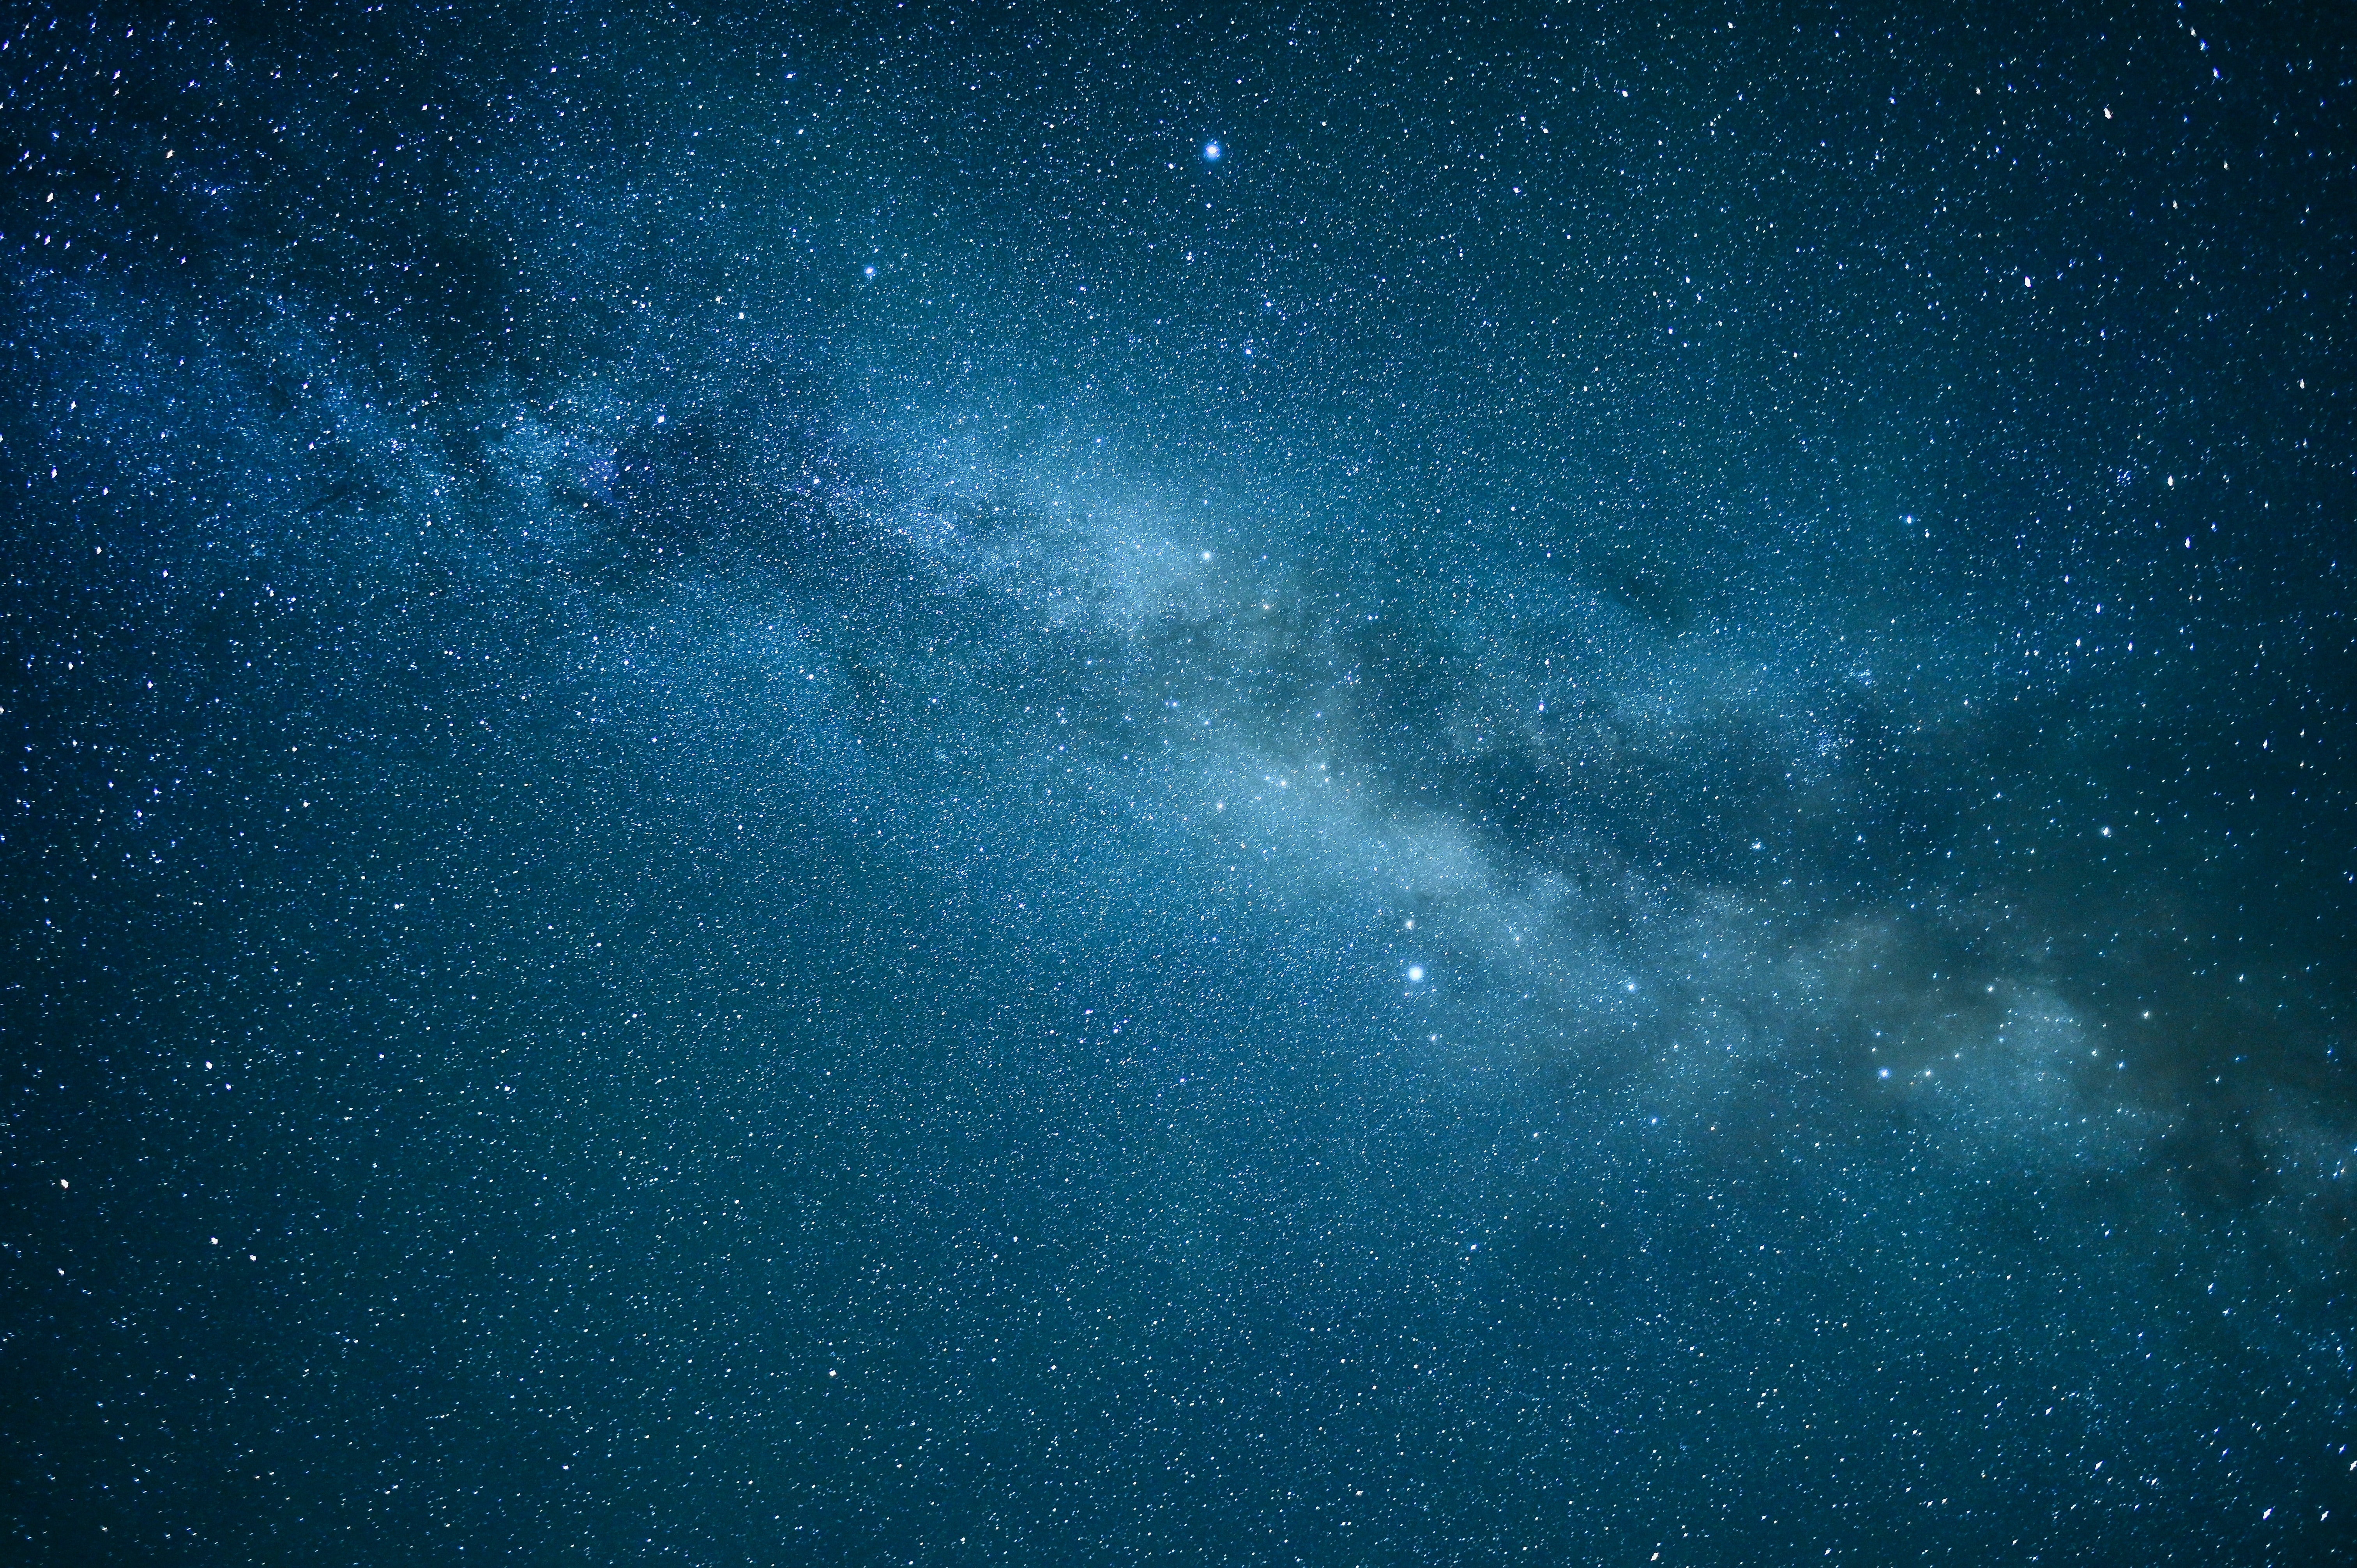 Бесплатное фото Синее небо с большим количеством звезд на нем